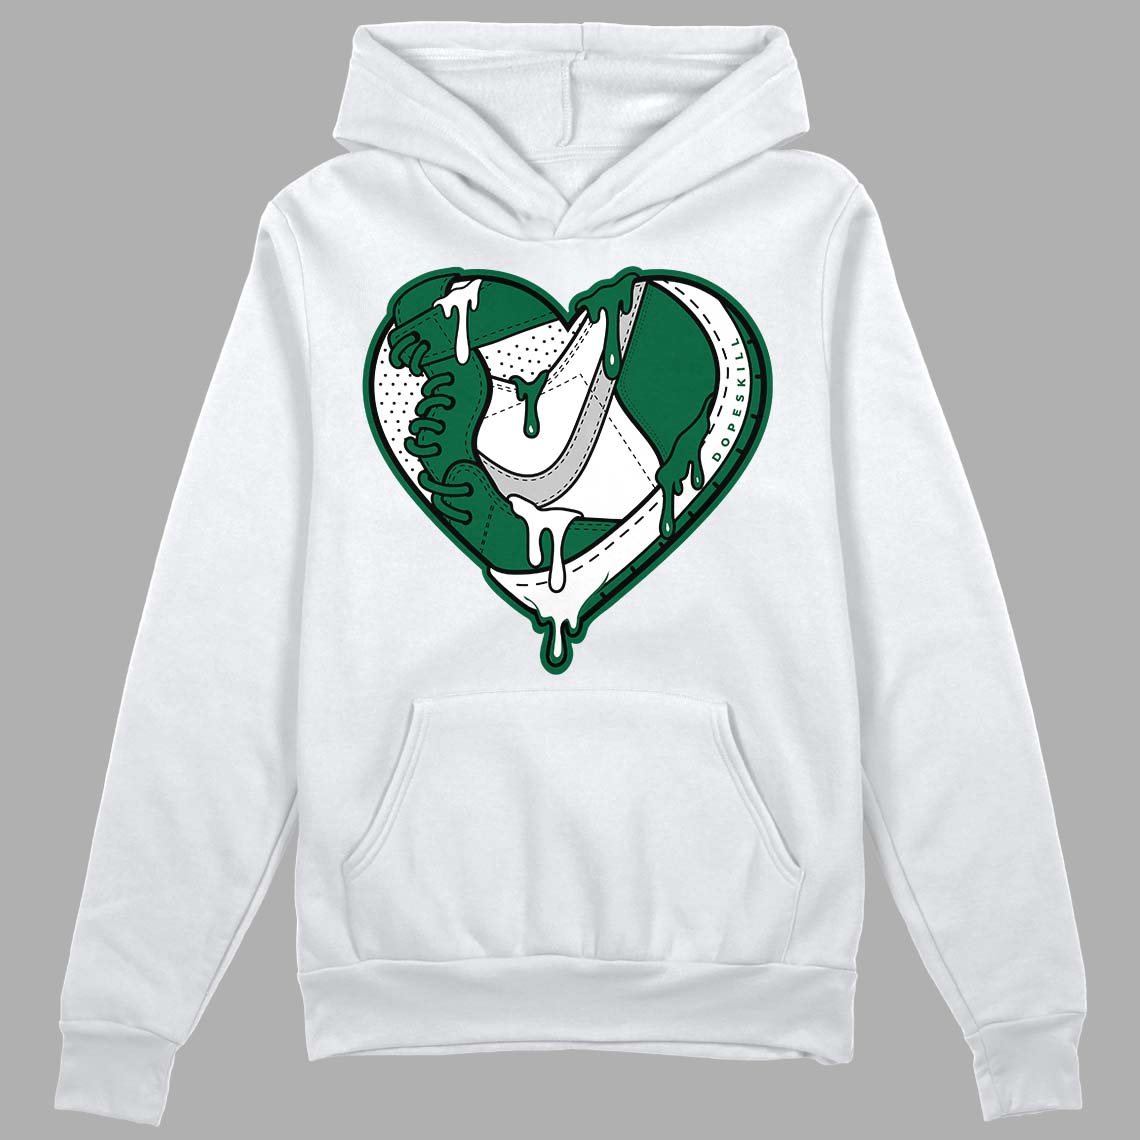 Gorge Green 1s DopeSkill Hoodie Sweatshirt Heart Jordan 1 Graphic - White 